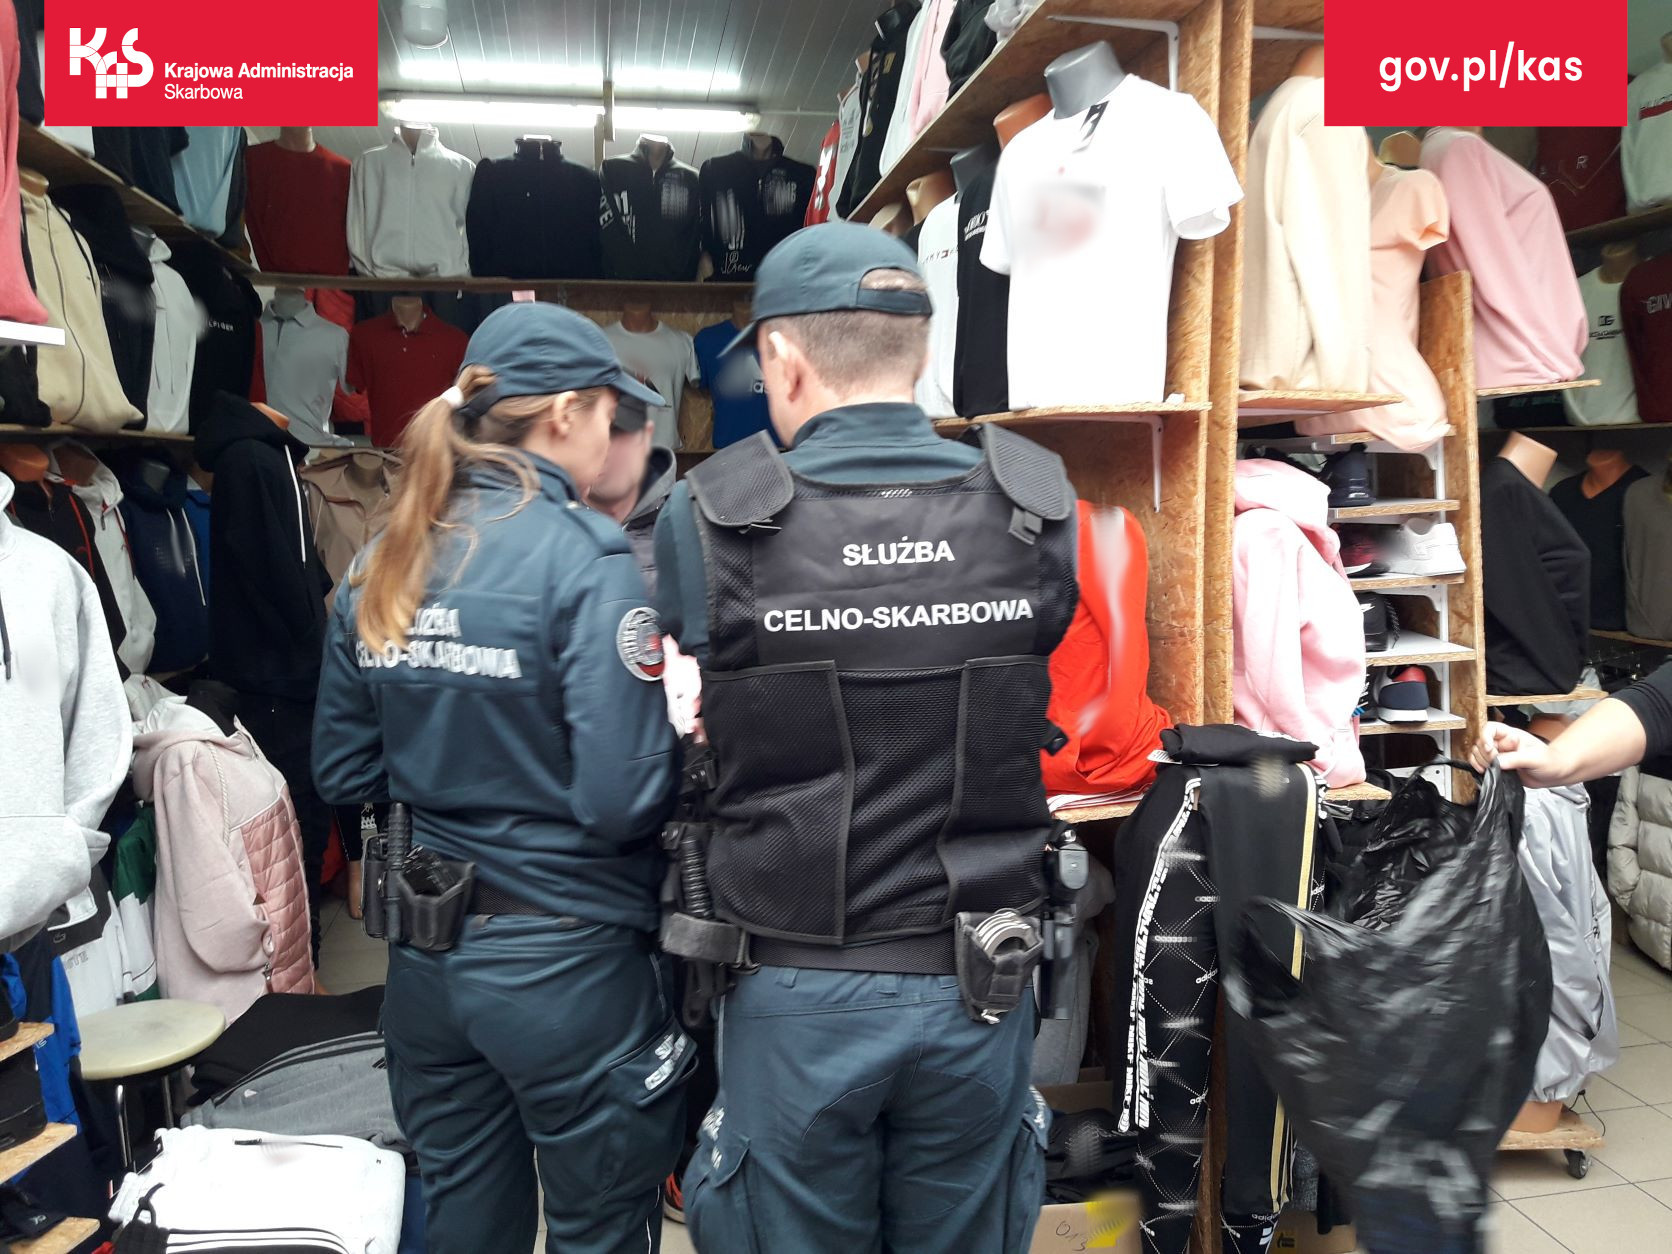 Podrabiane ubrania zatrzymane na bazarze w Słubicach